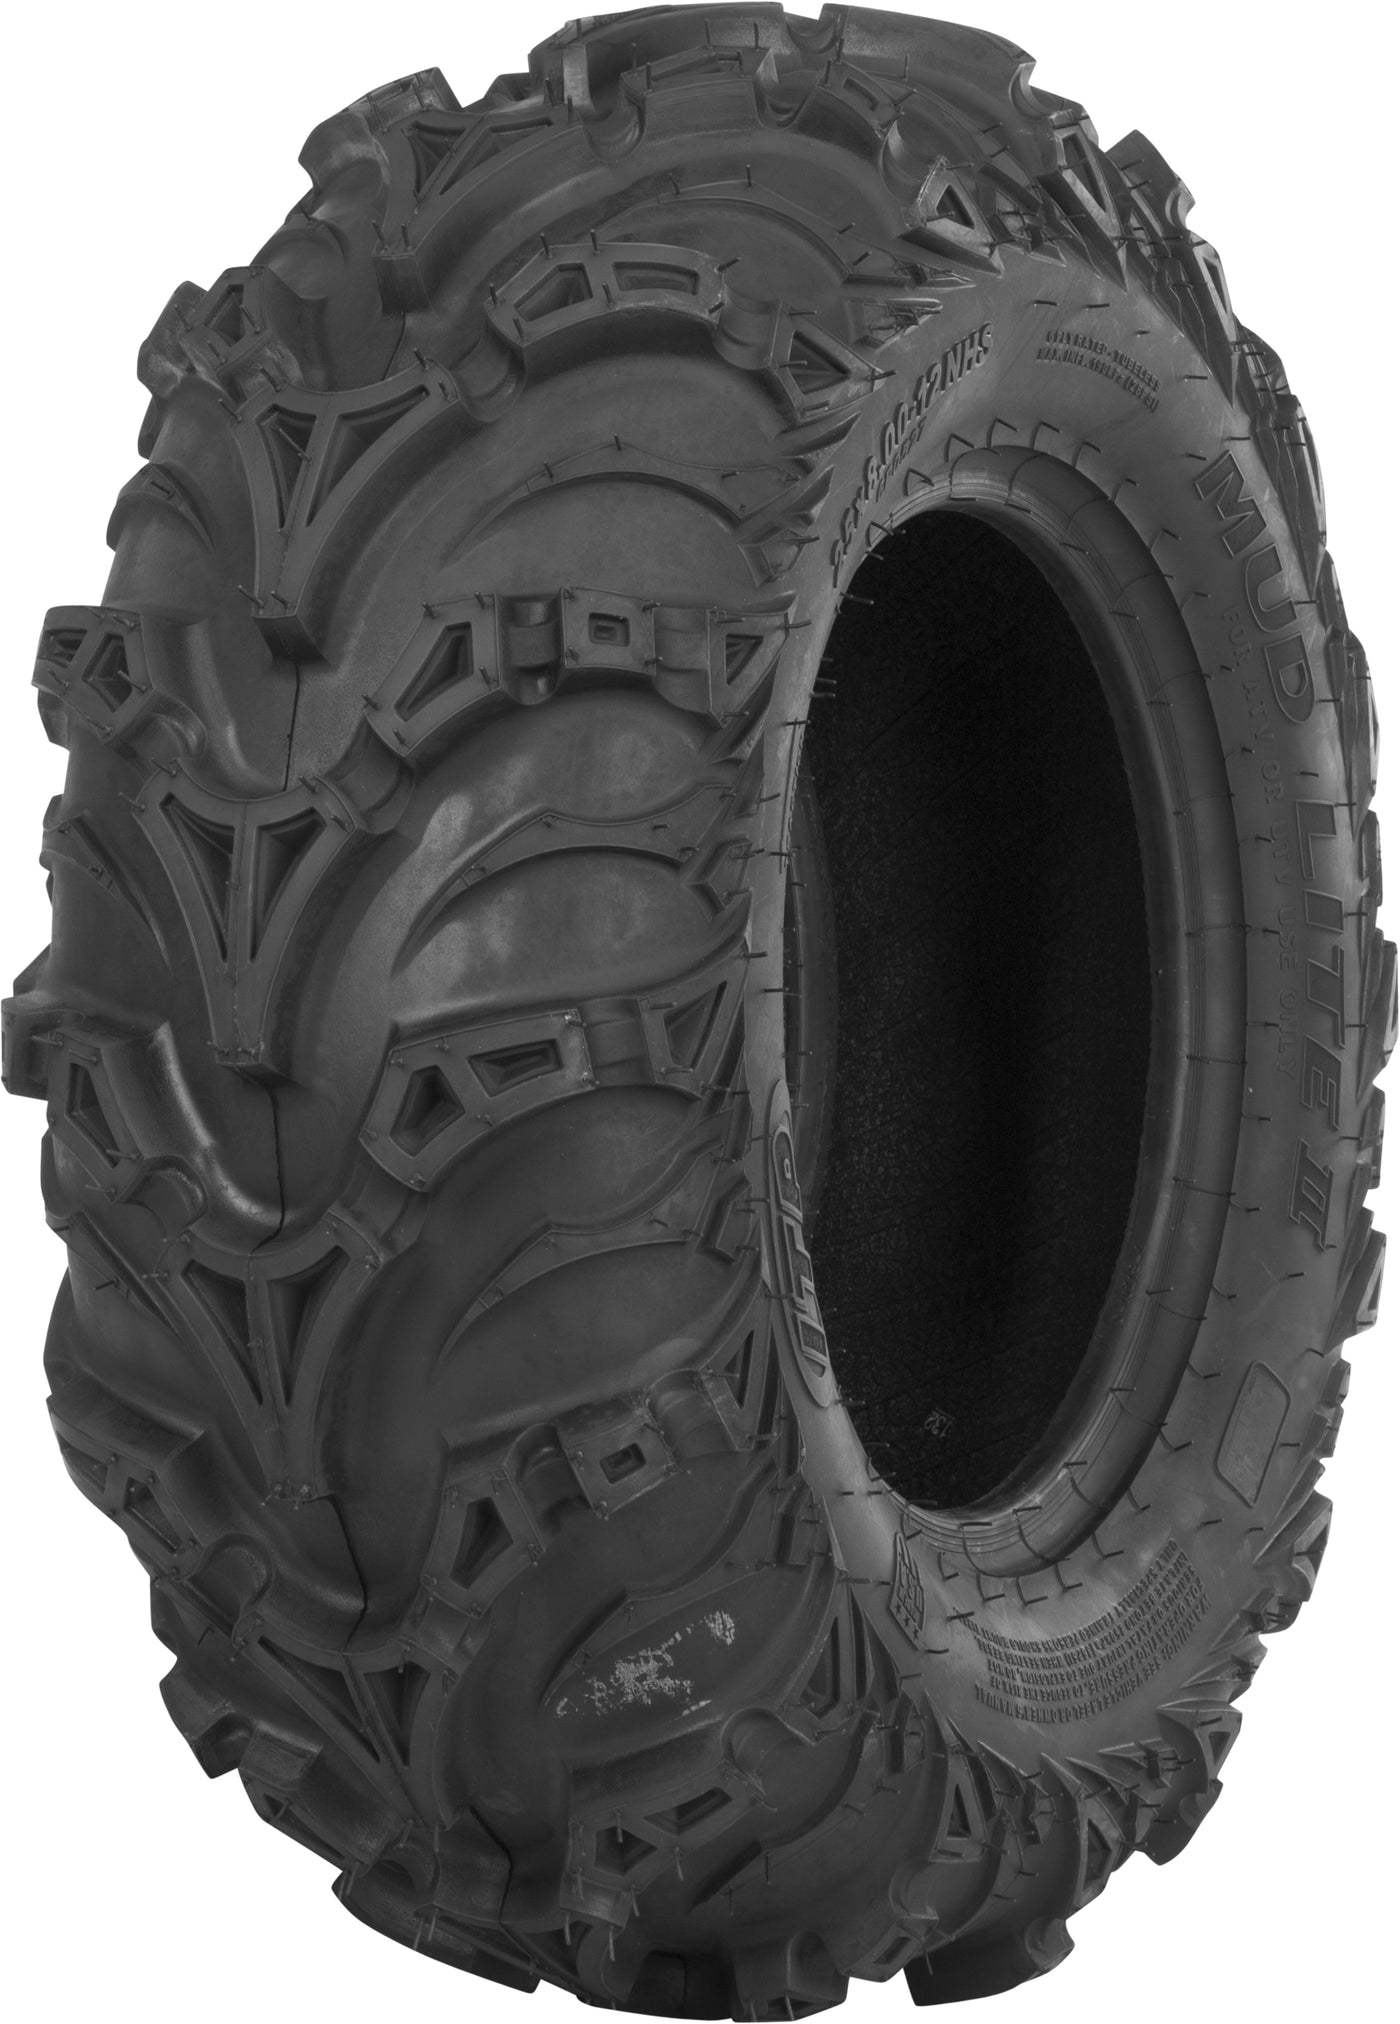 Tire Mud Lite Ii Front 25x8-12 Lr-905lbs Bias